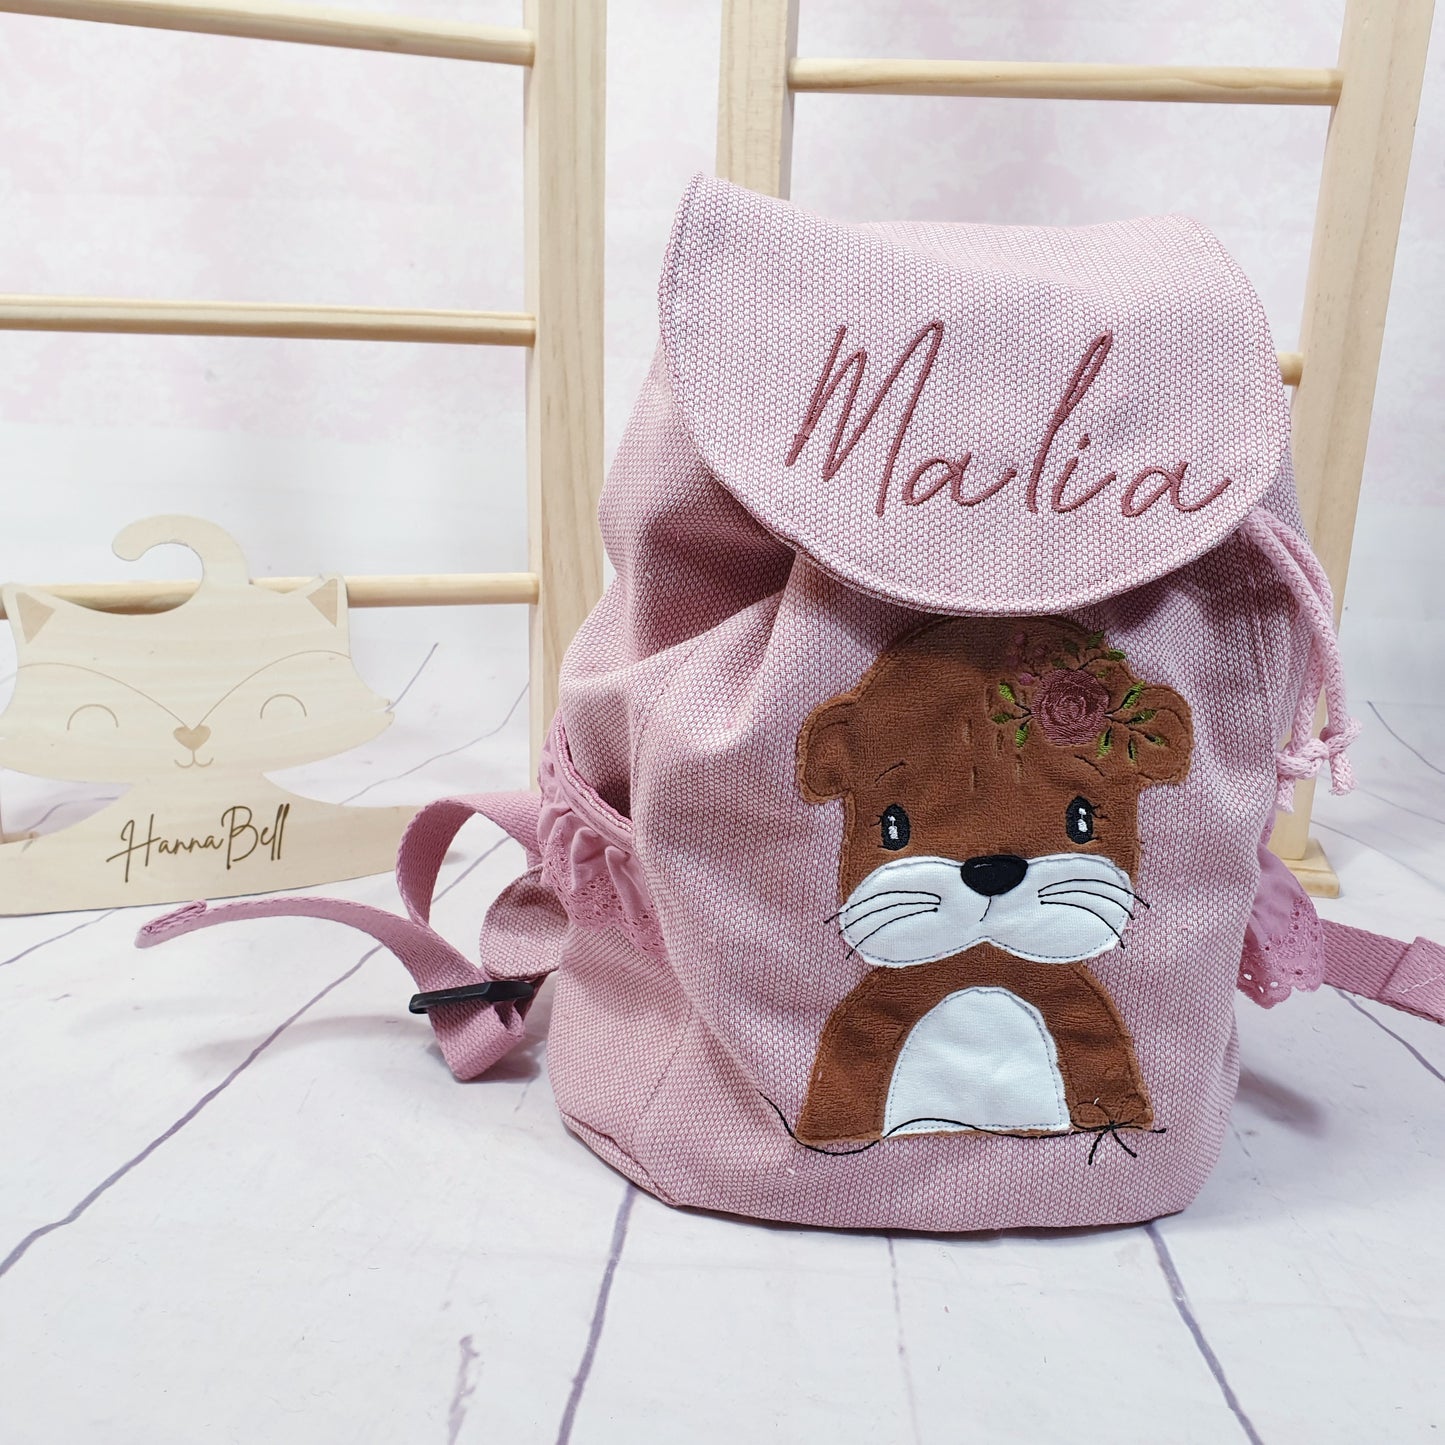 Handmade Kindergartenrucksack mit Boho Otter in rosa. Rucksack kann personalisiert werden.